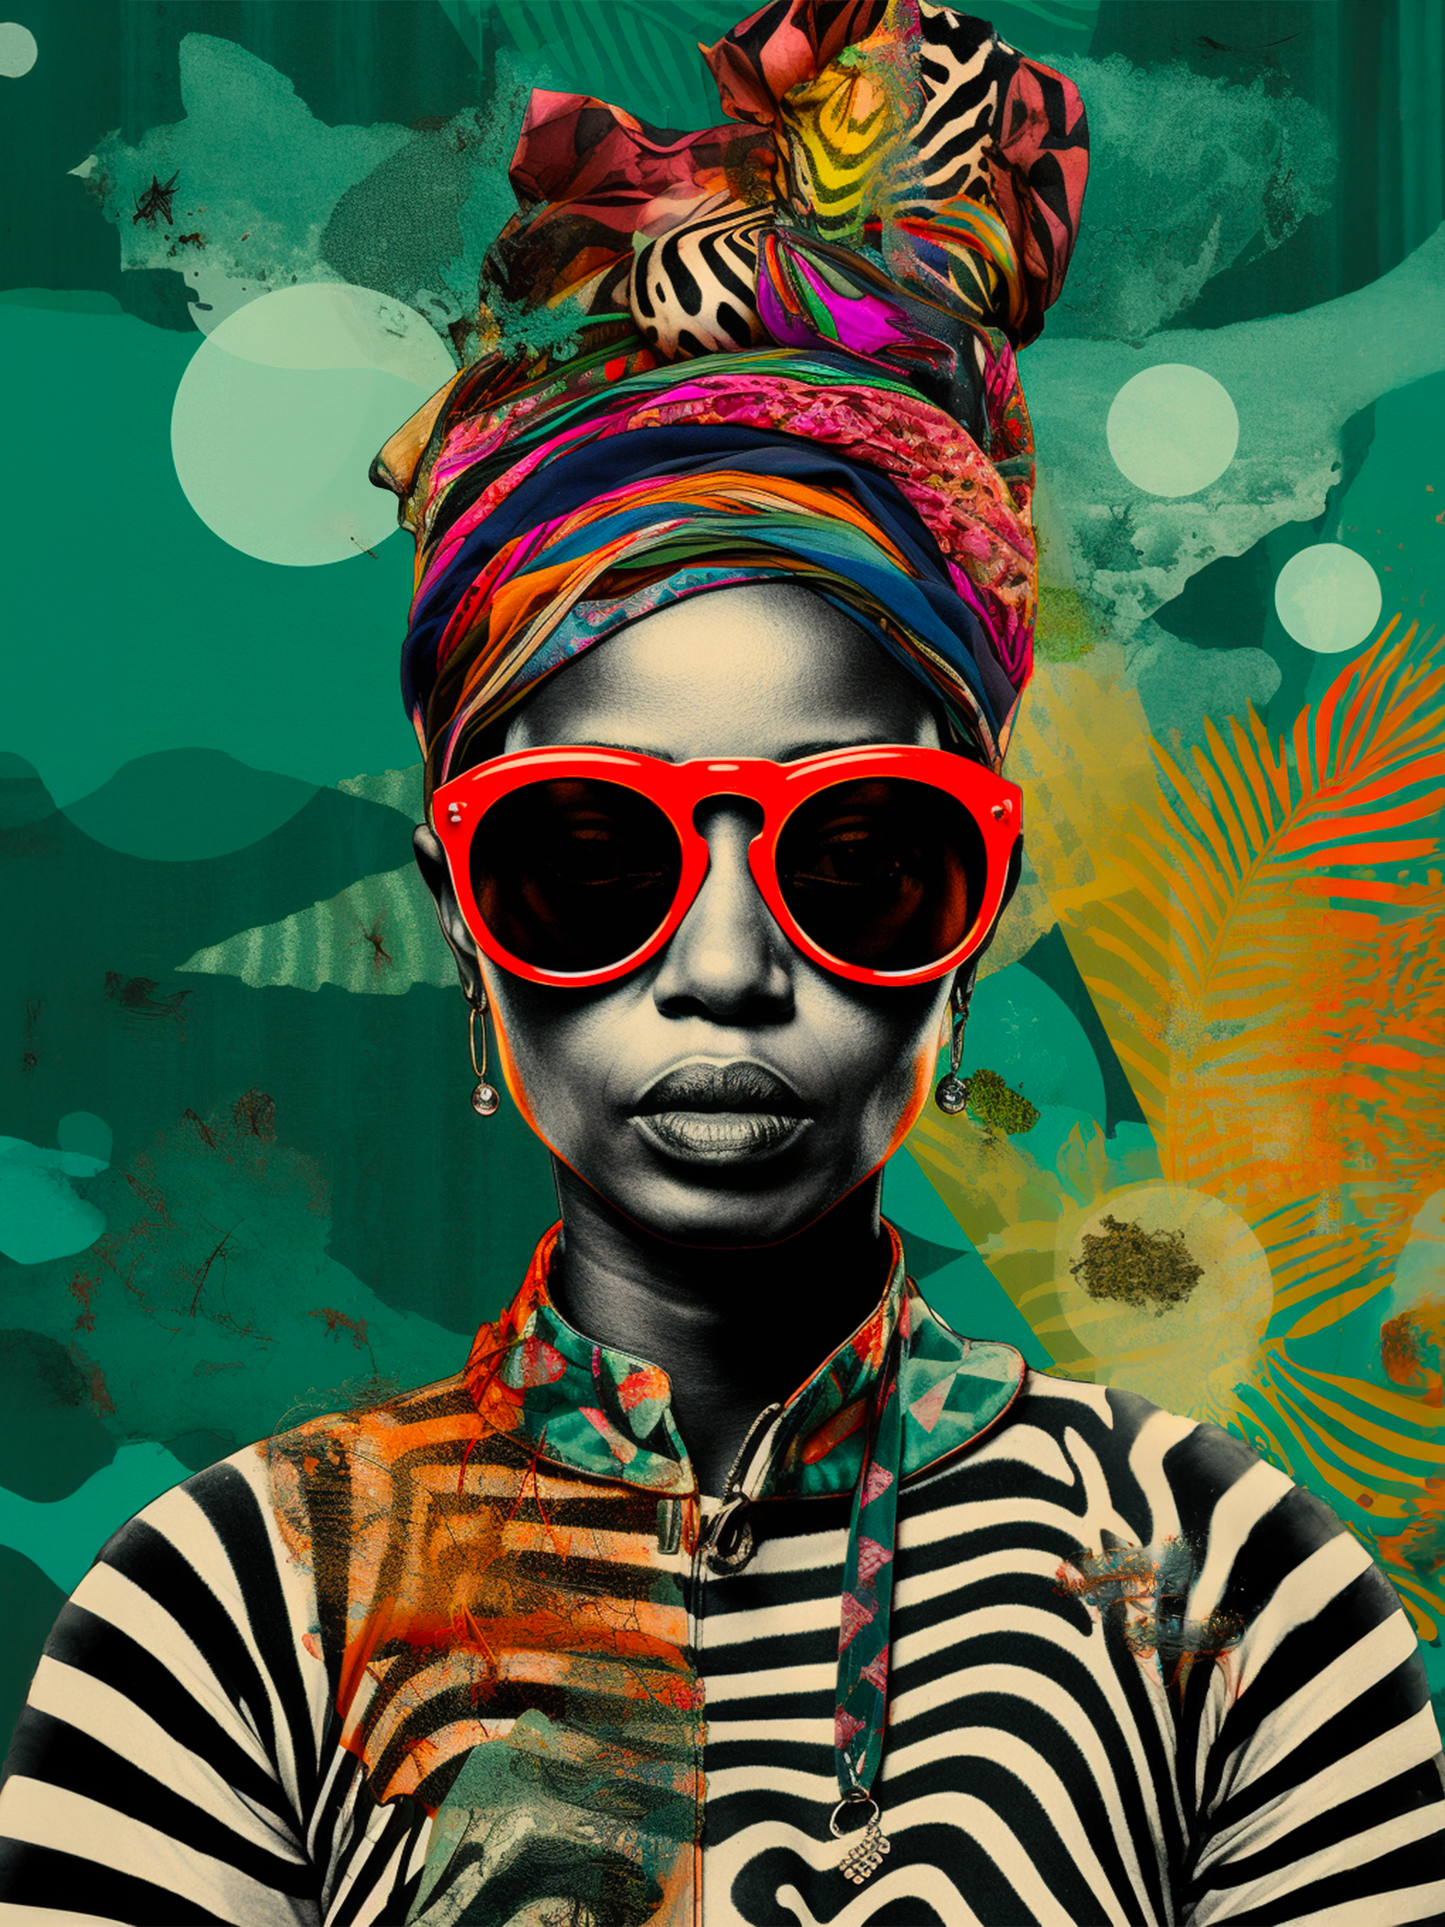  Cette toile affiche une femme africaine au turban vibrant et lunettes de soleil rouges, dégageant une forte présence de style.